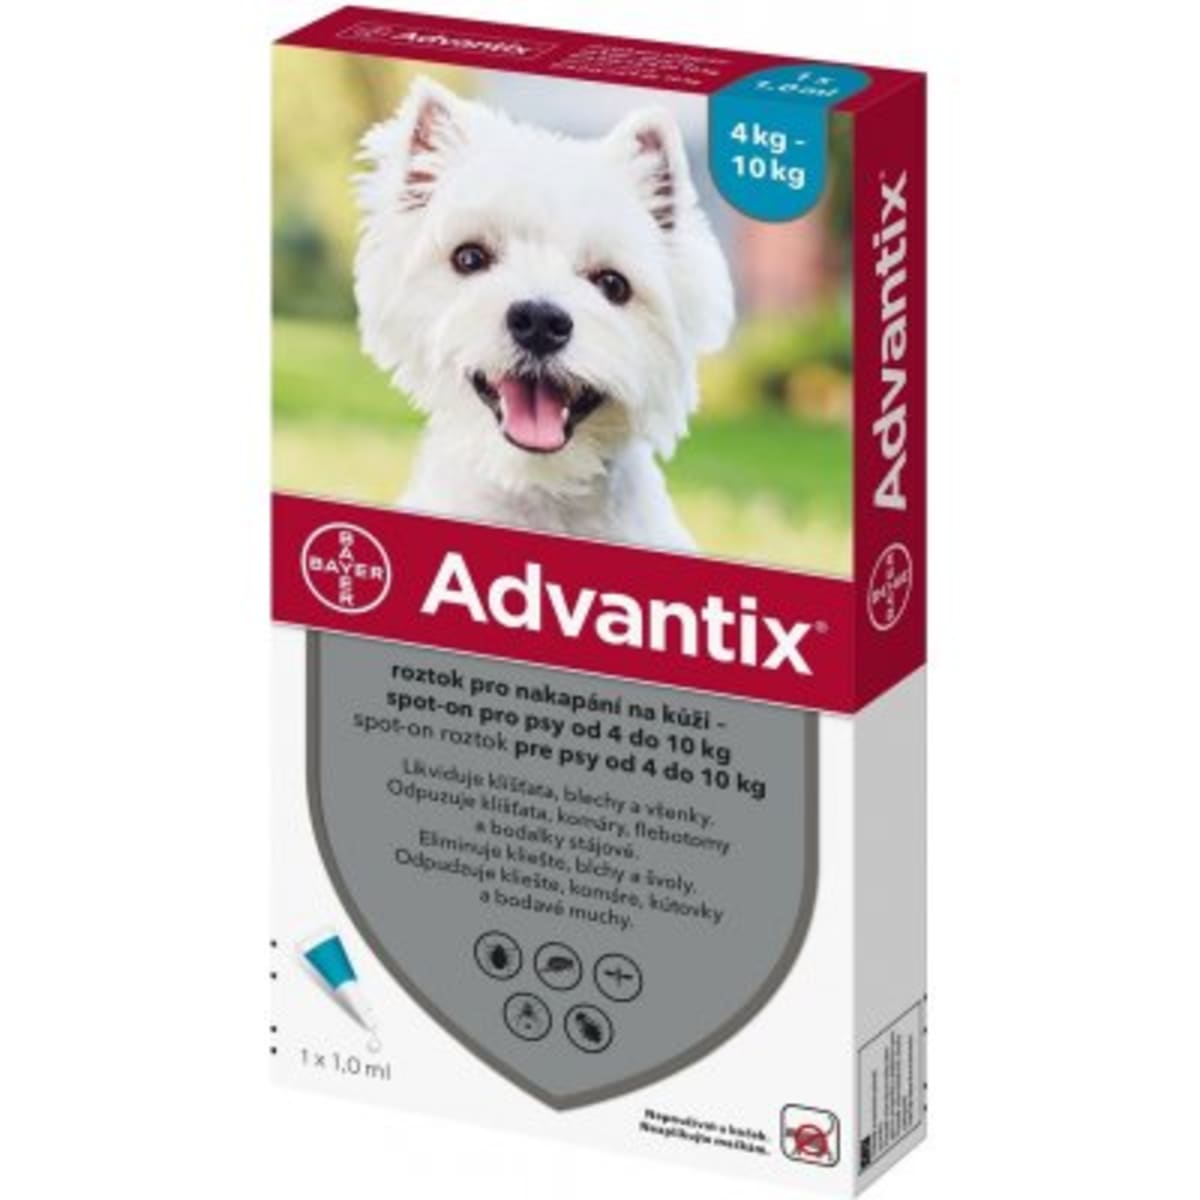 Advantix je léčebný veterinární přípravek. Čtěte pečlivě příbalovou informaci. Nepoužívejte pro kočky